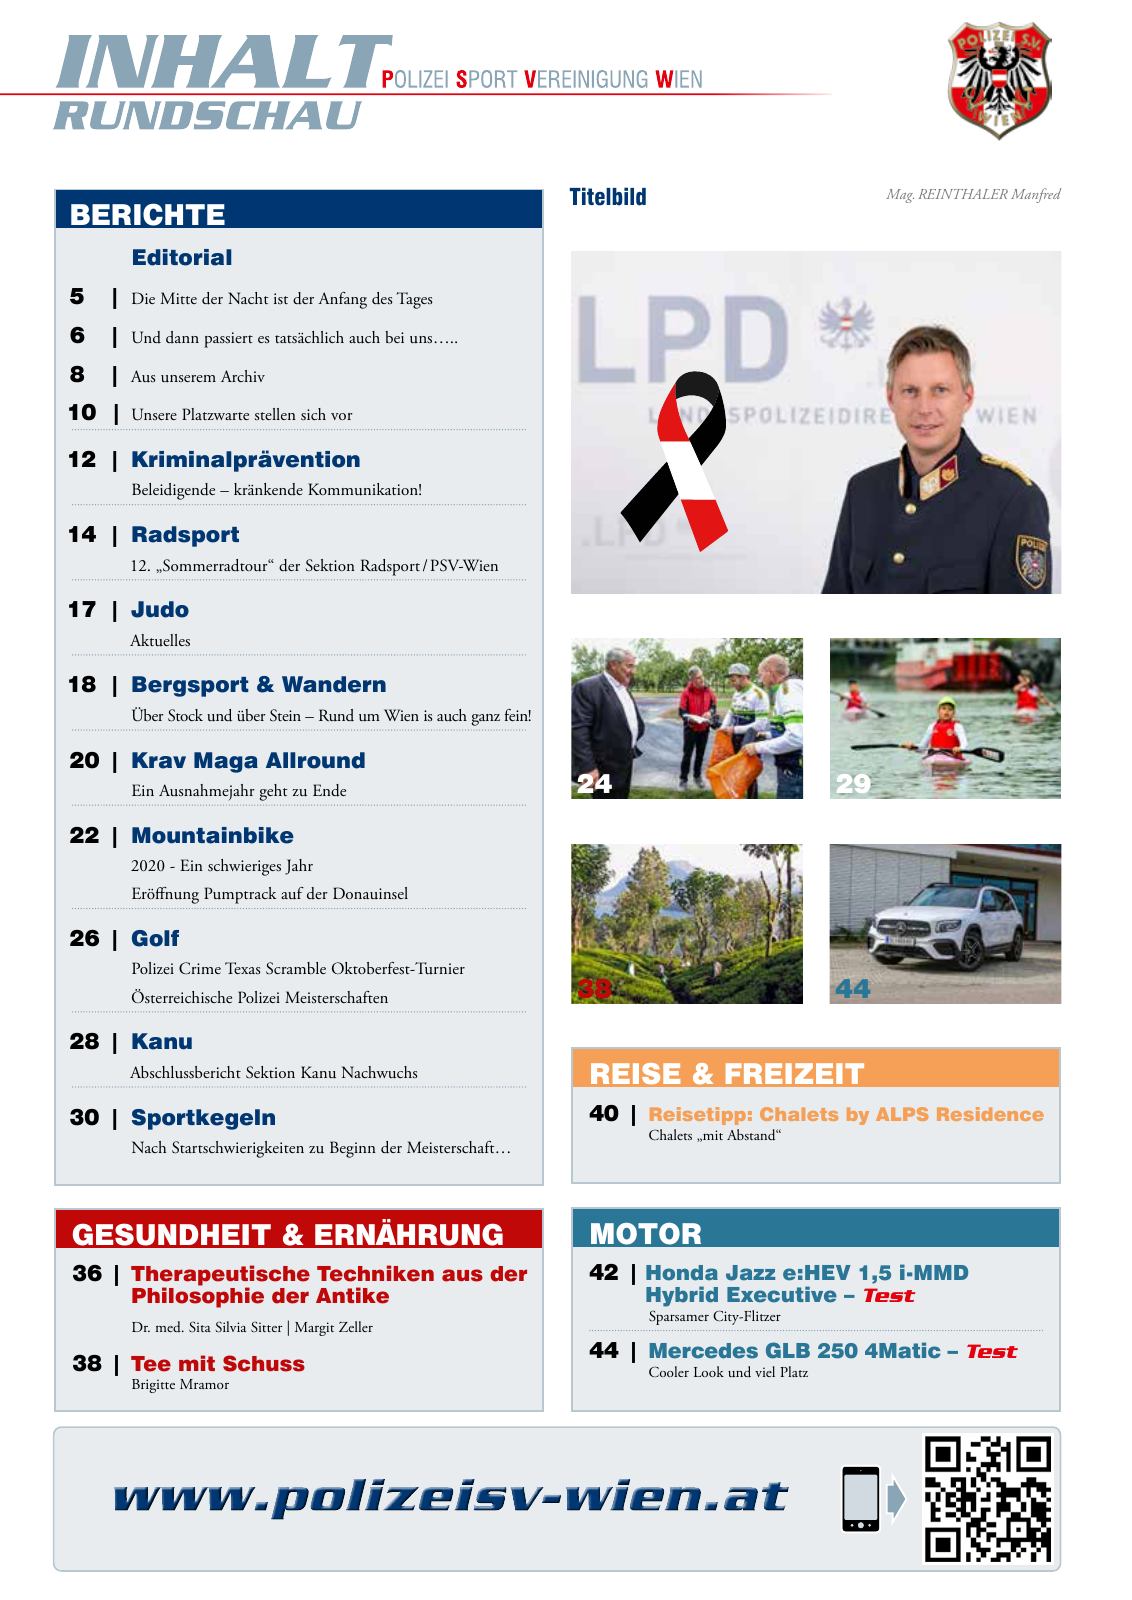 Vorschau Rundschau Polizei Sport 11-12/2020 Seite 3